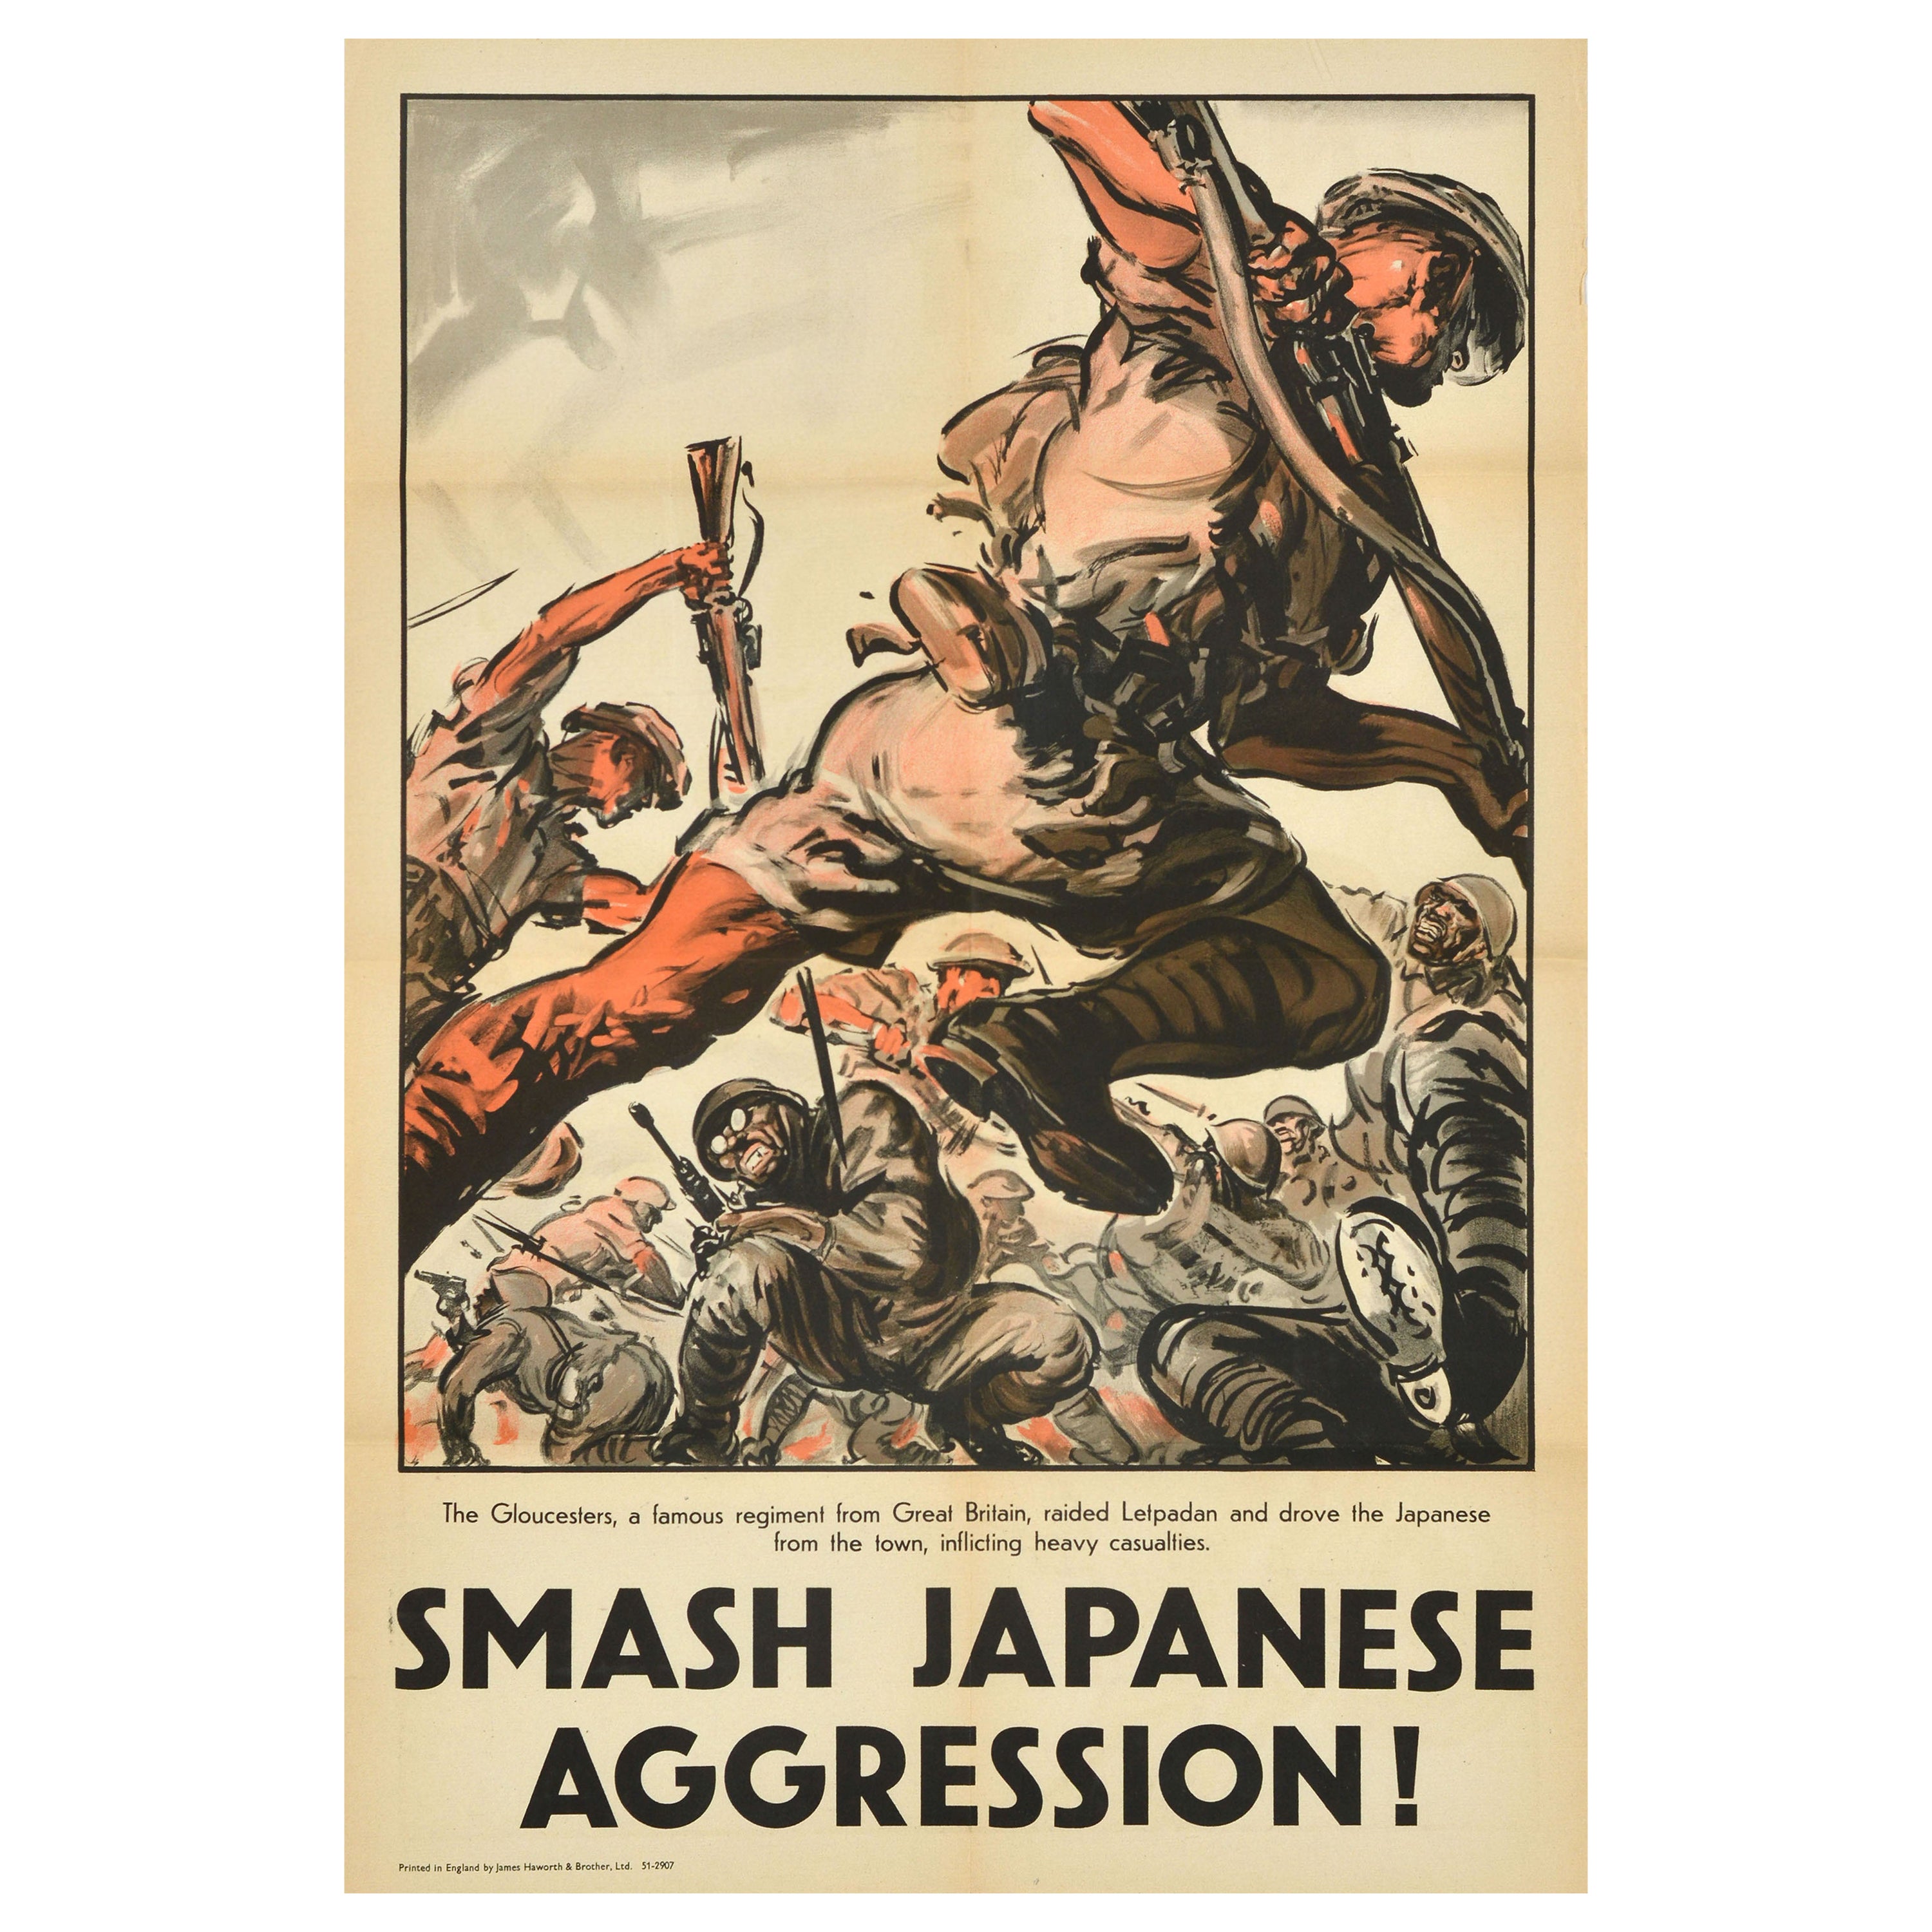 Original Vintage Cartel de Propaganda de Guerra Smash Japanese Aggression WWII Glosters